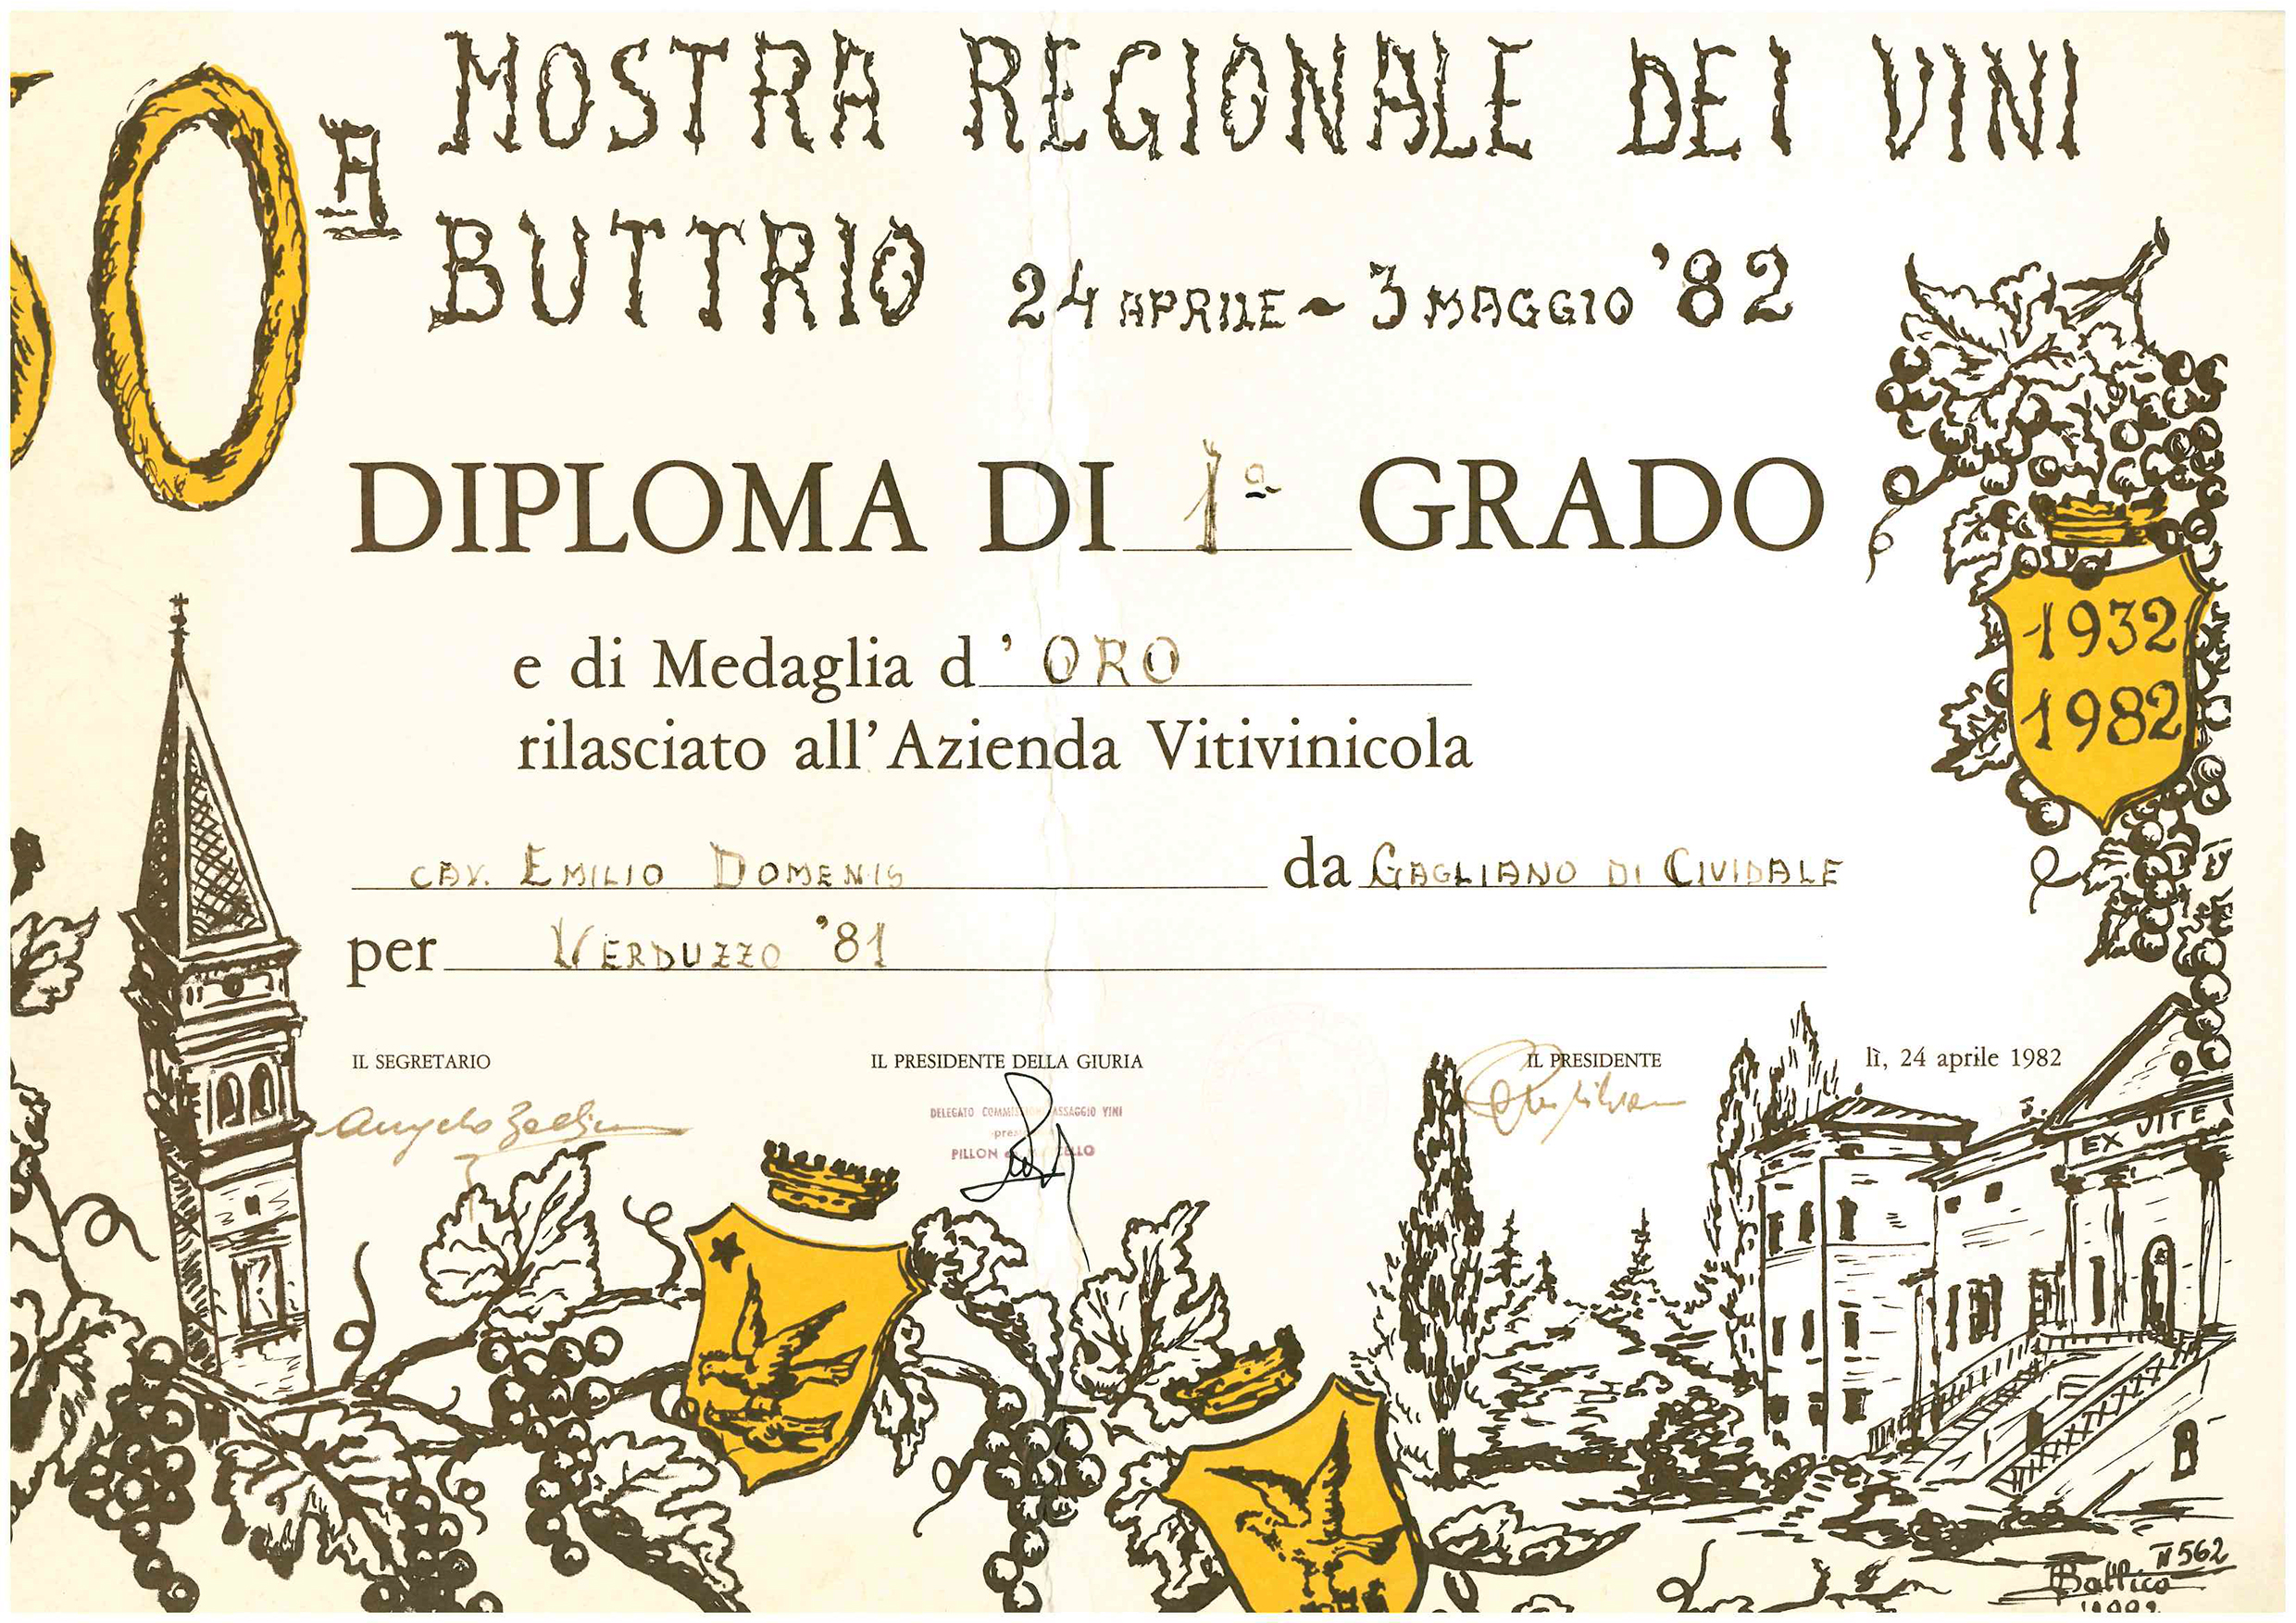 Mostra Regionale dei Vini Buttrio 1982 – Verduzzo ’81